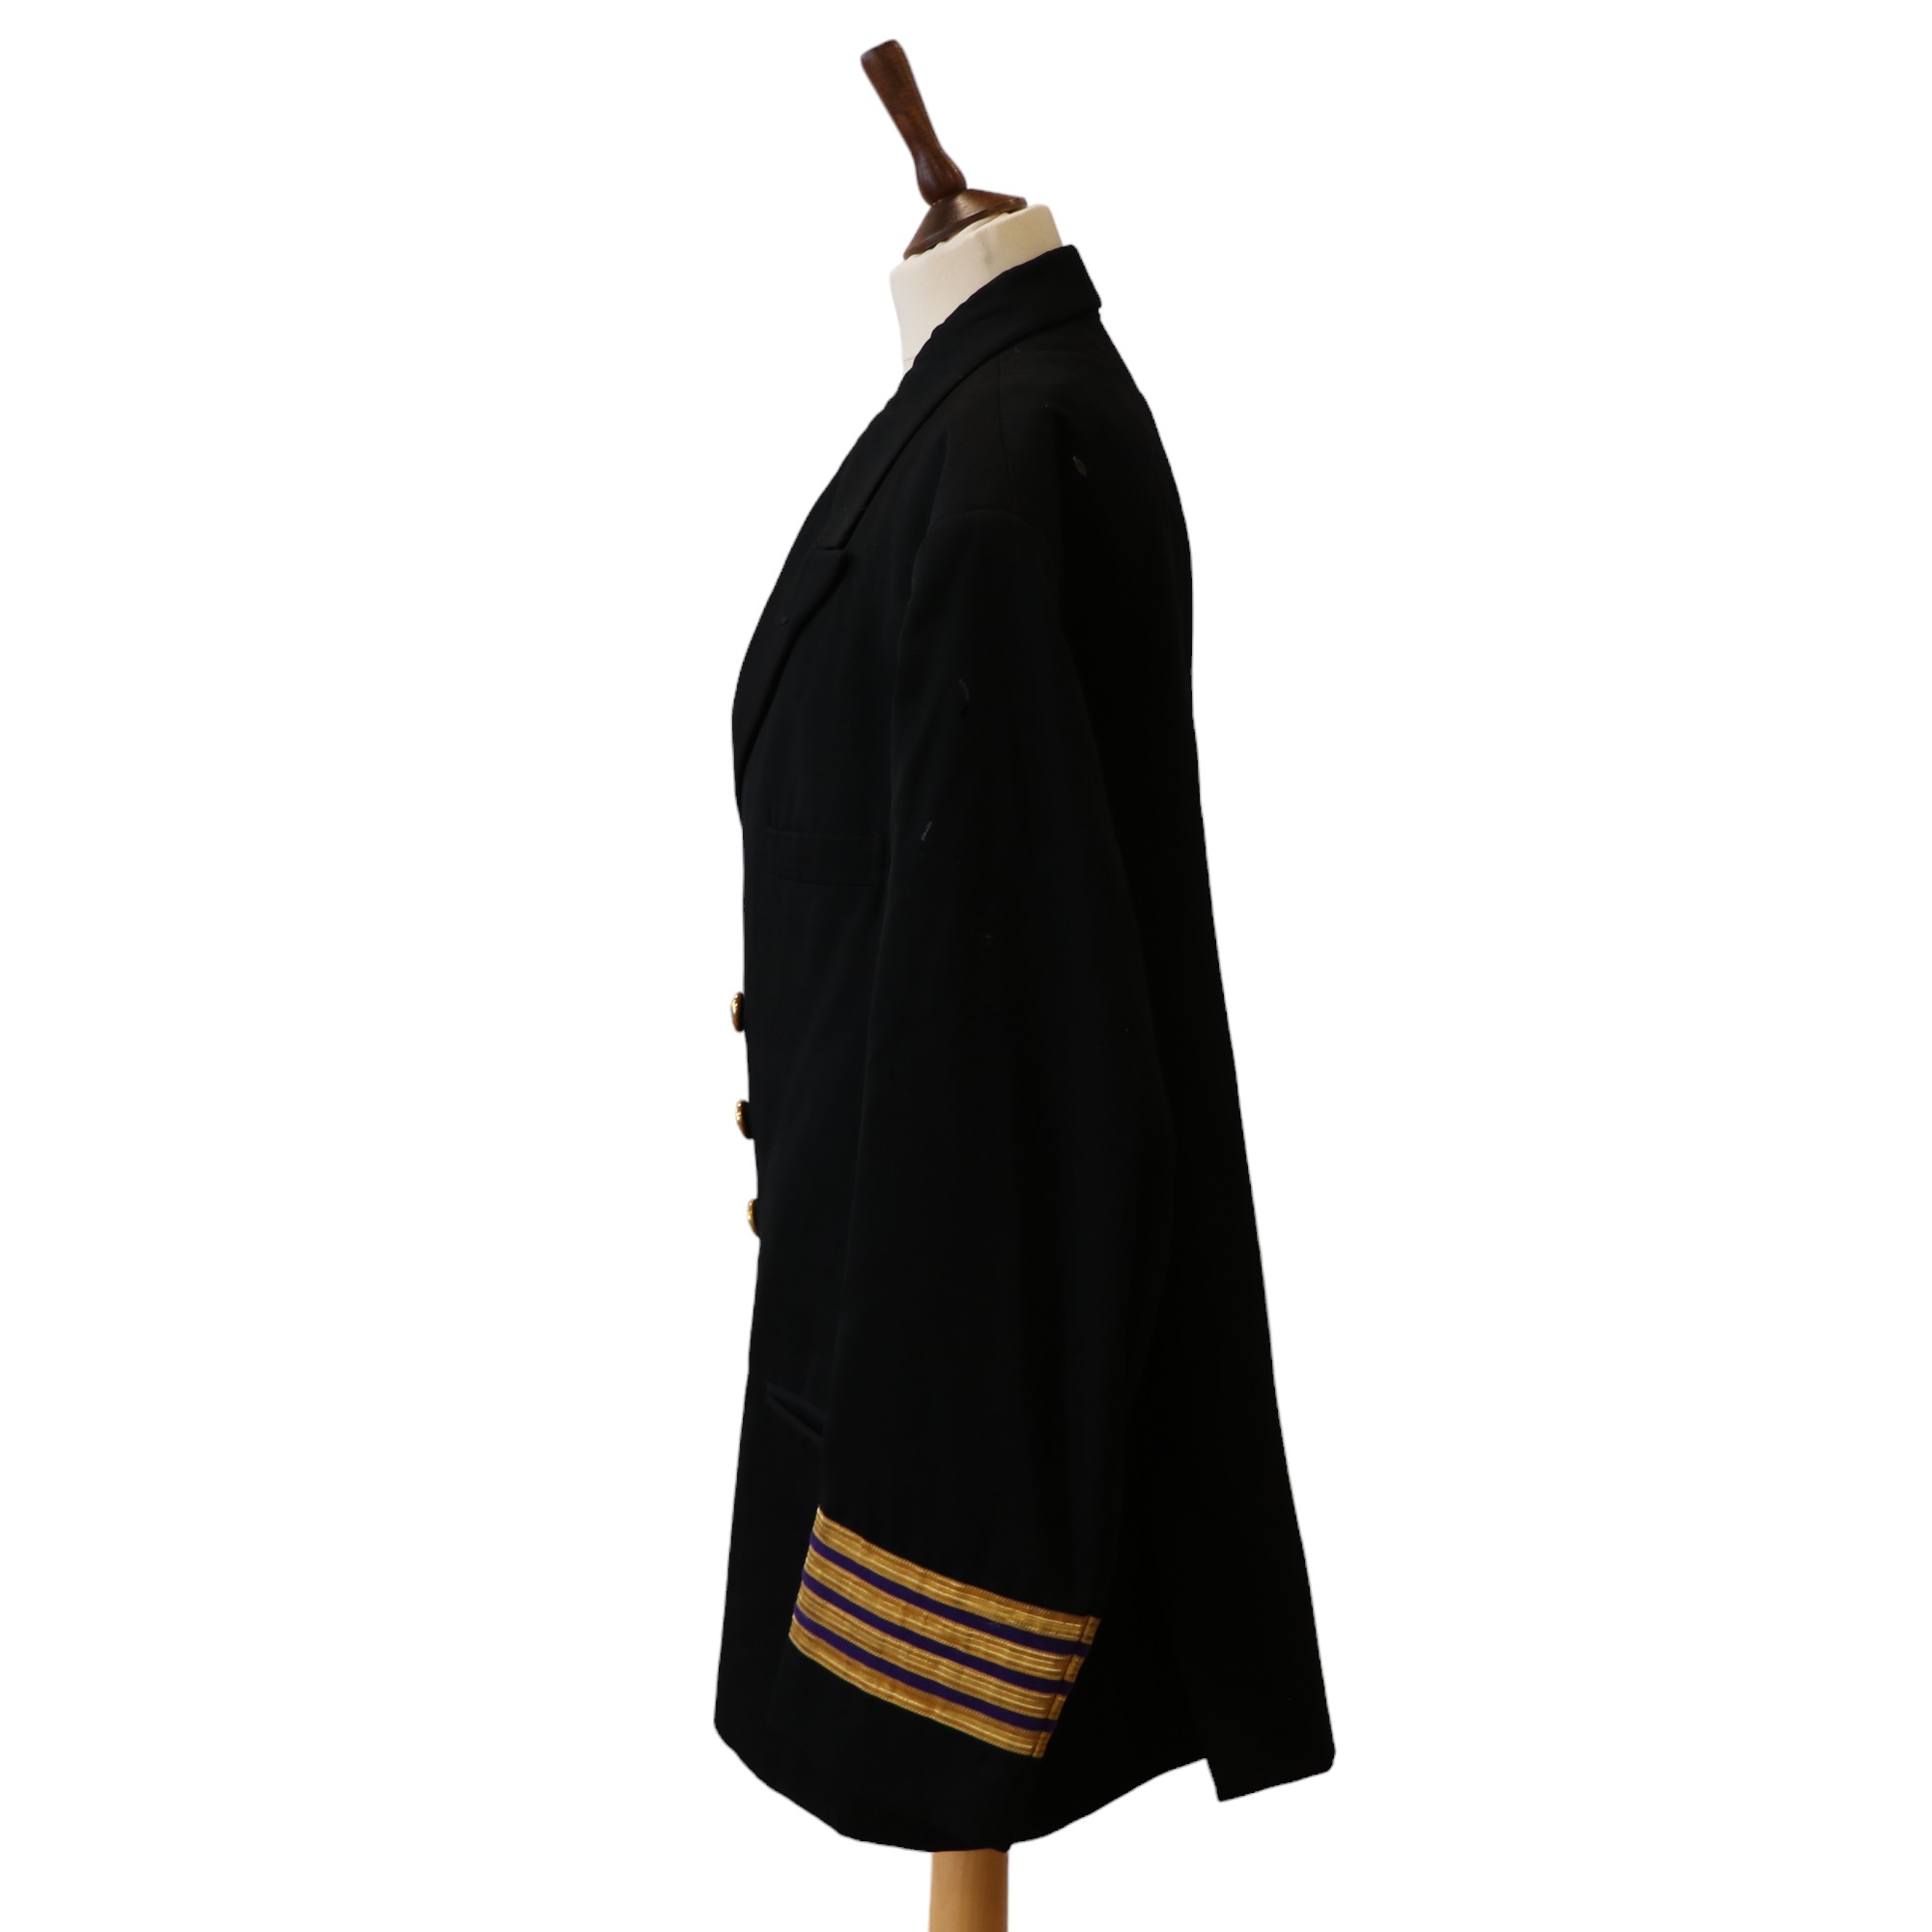 A 1940s Roya Mail Line officer's reefer jacket - Image 2 of 4